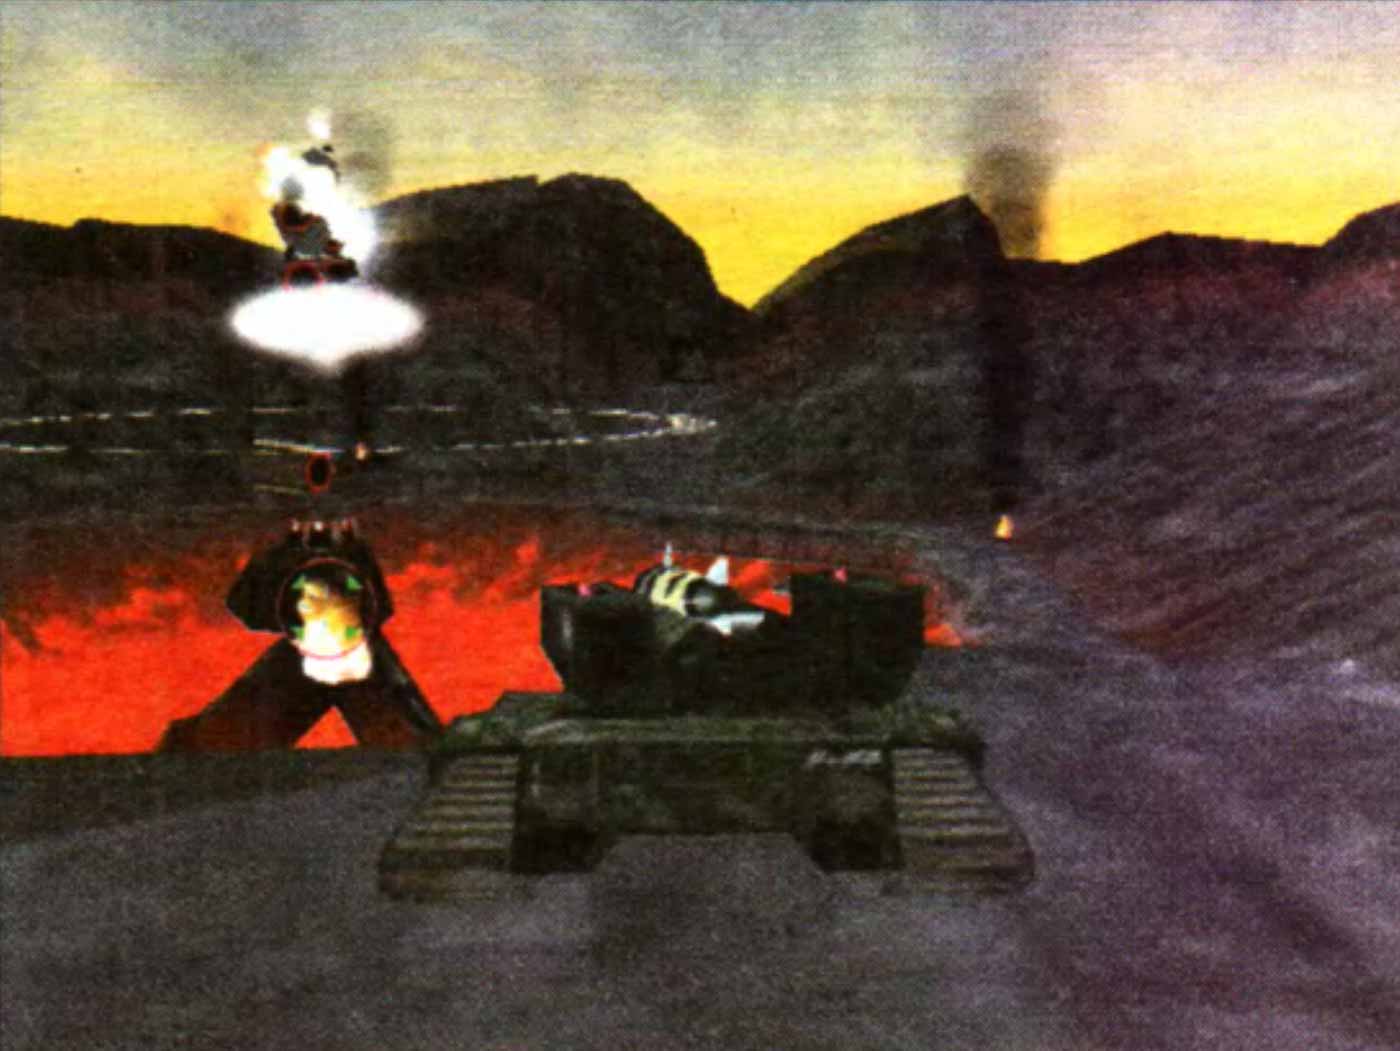 Recoil компьютерная игра про танки 3D аркада 1999 года описание и рецензия